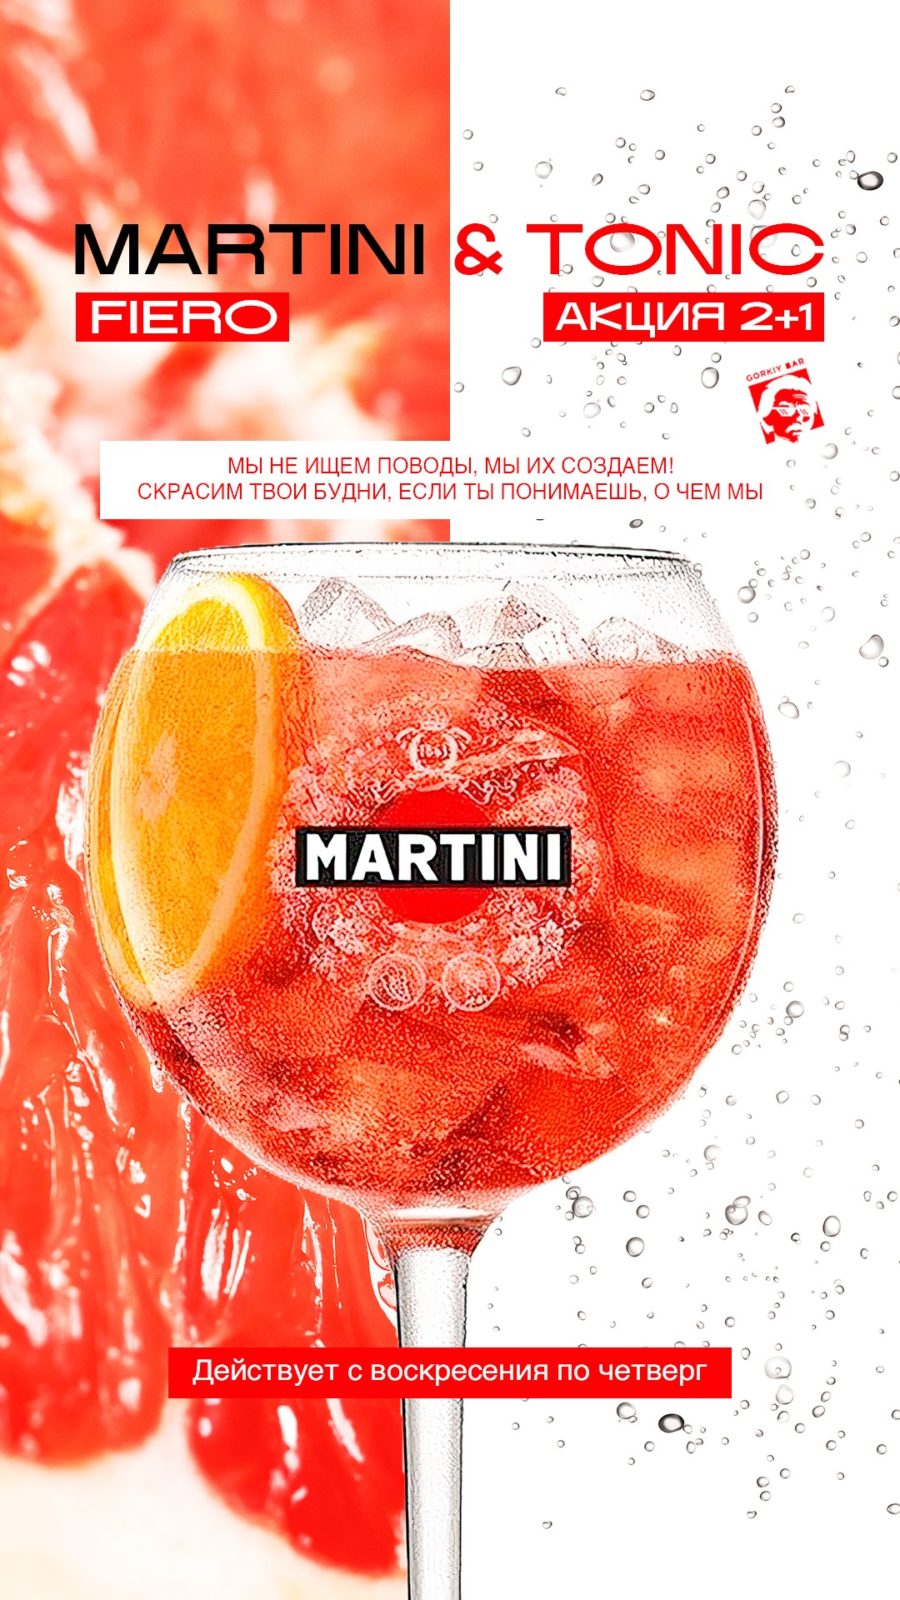 Мартини Фиеро 3 коктейля по цене 2-х!